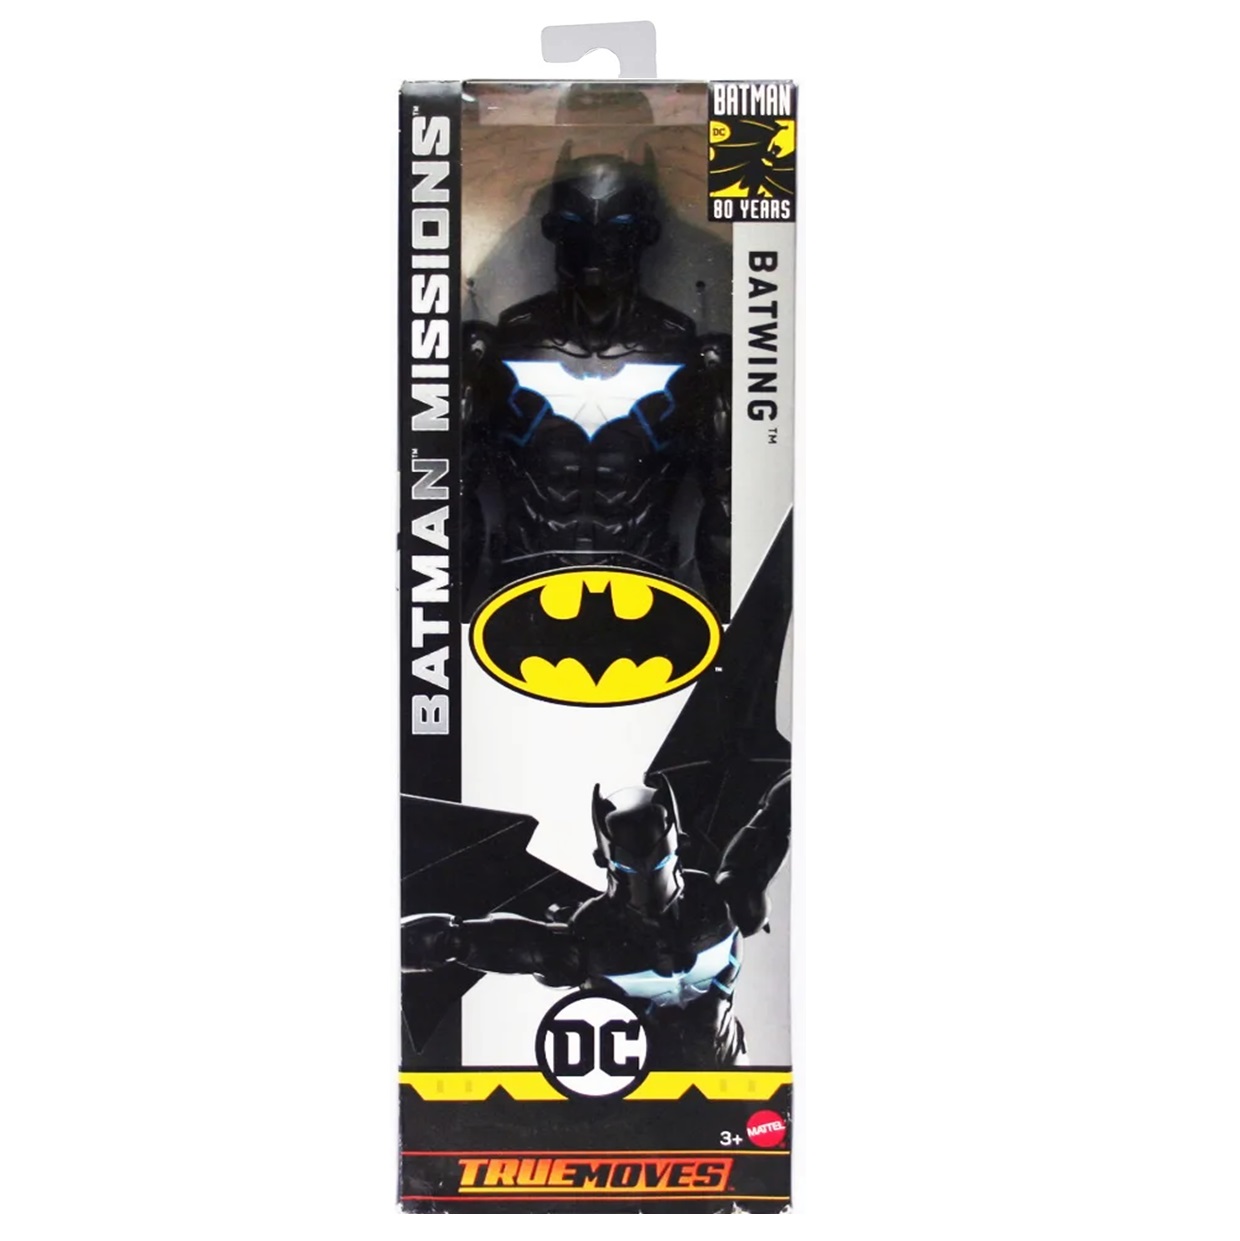 Batwing Figura Batman Missions Dc Comics True Moves 12 Pulg